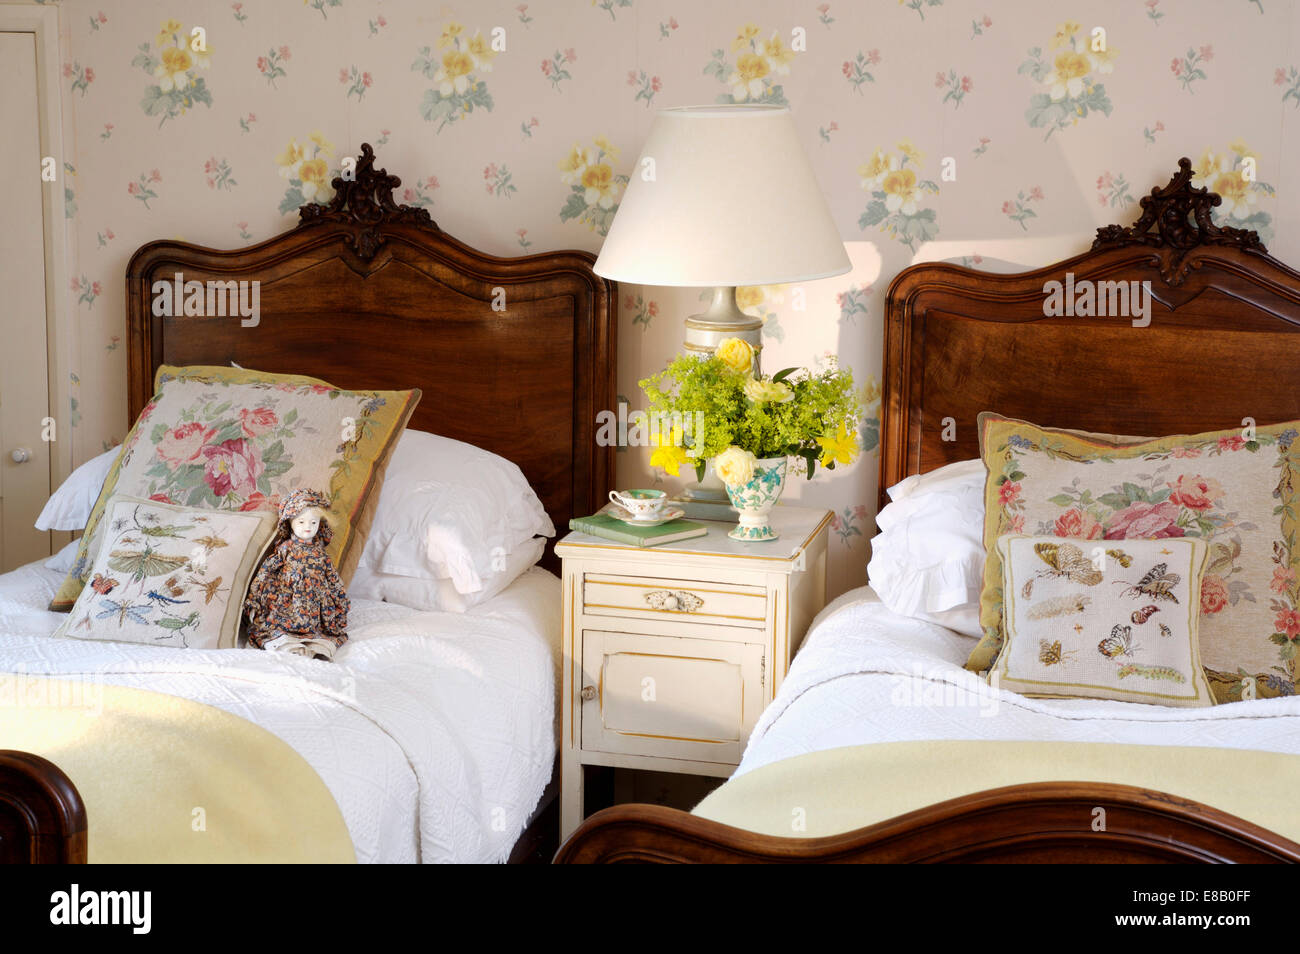 Arazzo cuscini e biancheria da letto bianca su mogano antichi letti singoli nella camera da letto del paese con carta da parati floreale Foto Stock